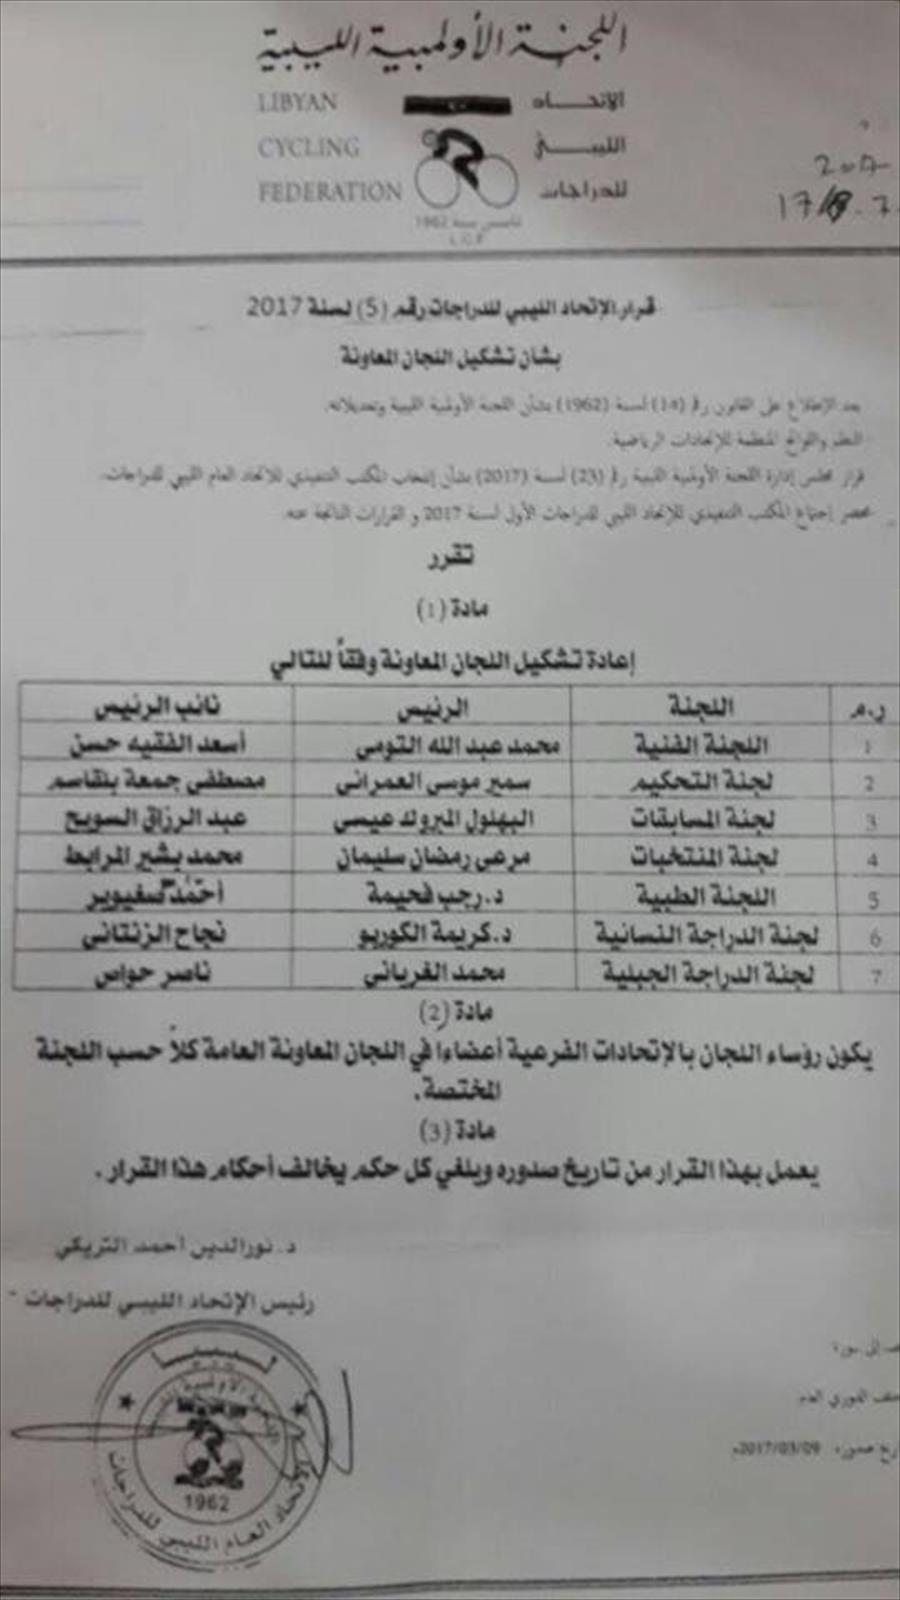 بالصور: تشكيل اللجان المعاونة في الاتحاد الليبي للدراجات